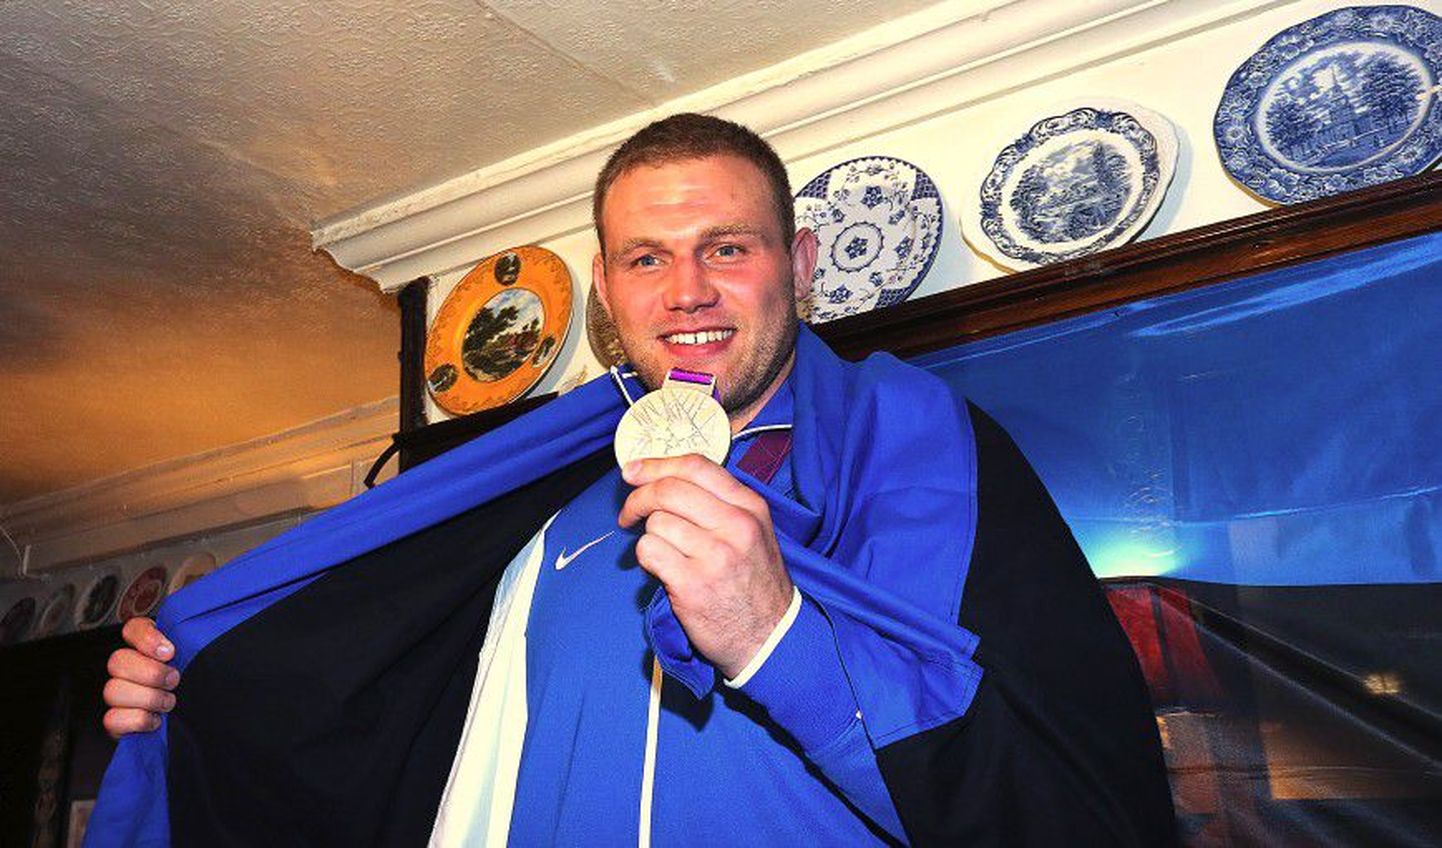 Londoni olümpiamängudel Eestile esimese medali toonud Heiki Nabi rõõmsalt hõbedast autasu demonstreerimas.